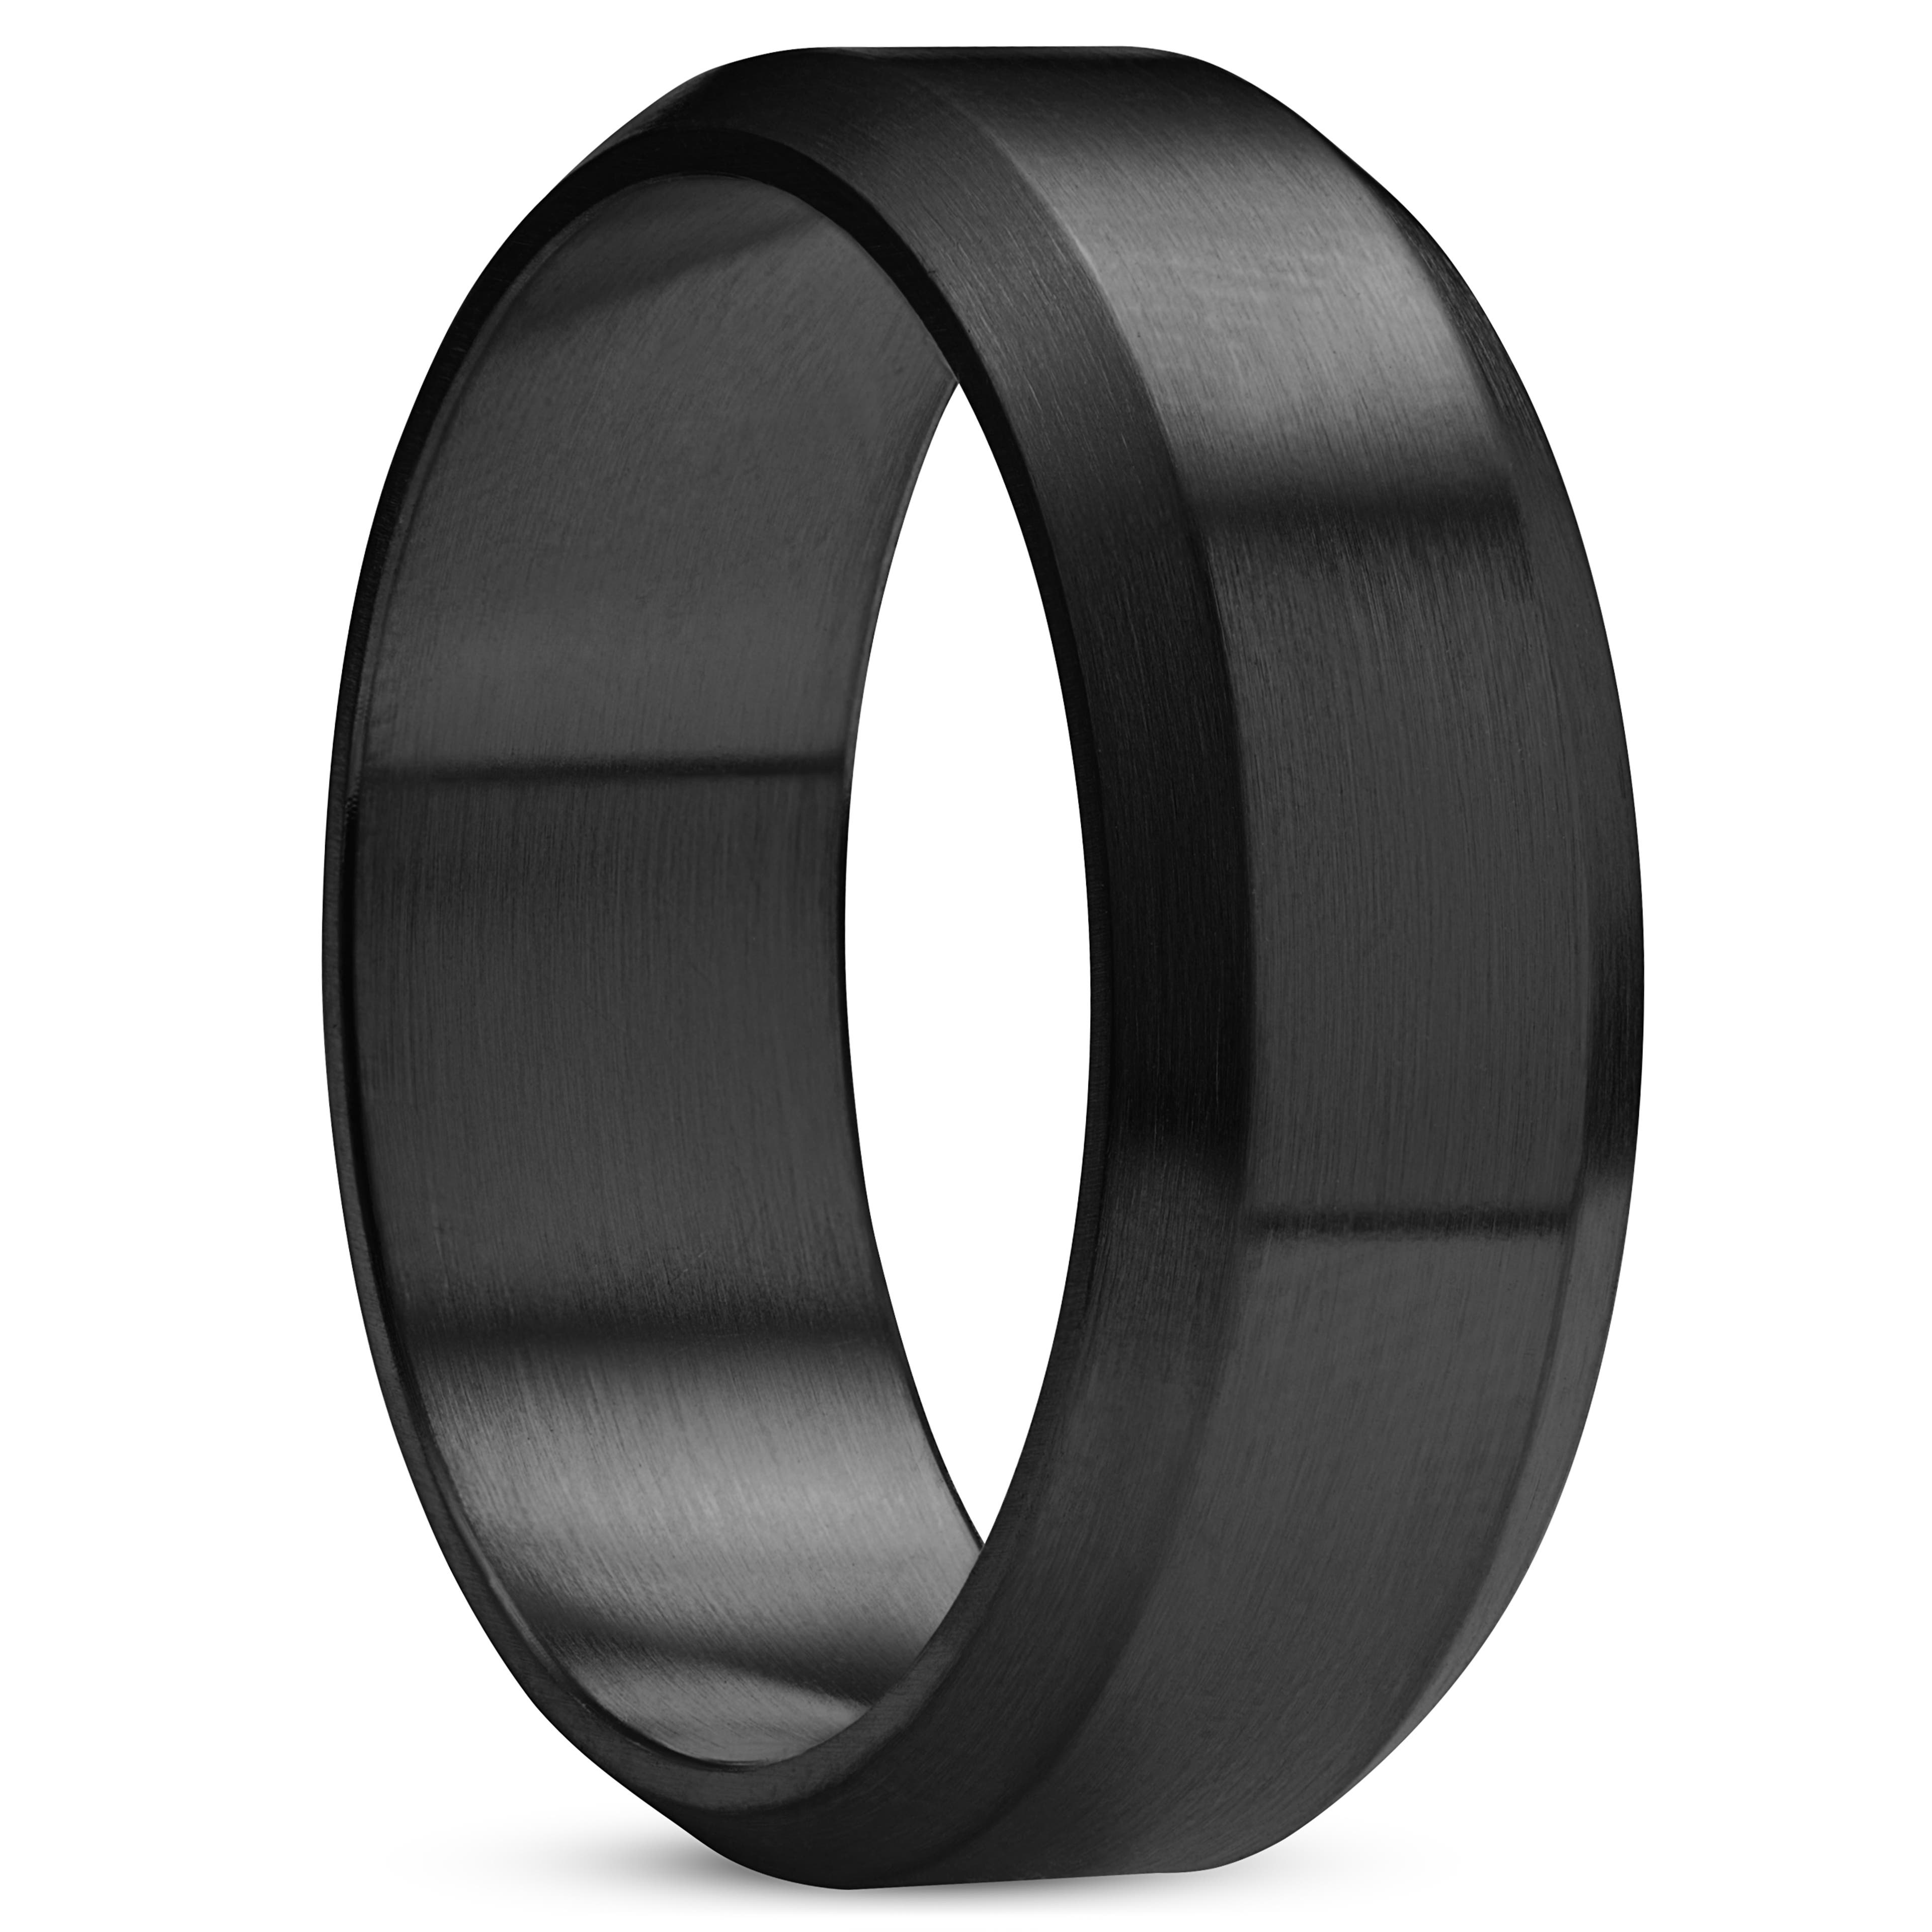 8 mm brúsený prsteň so skoseným okrajom z nehrdzavejúcej ocele v čiernej farbe